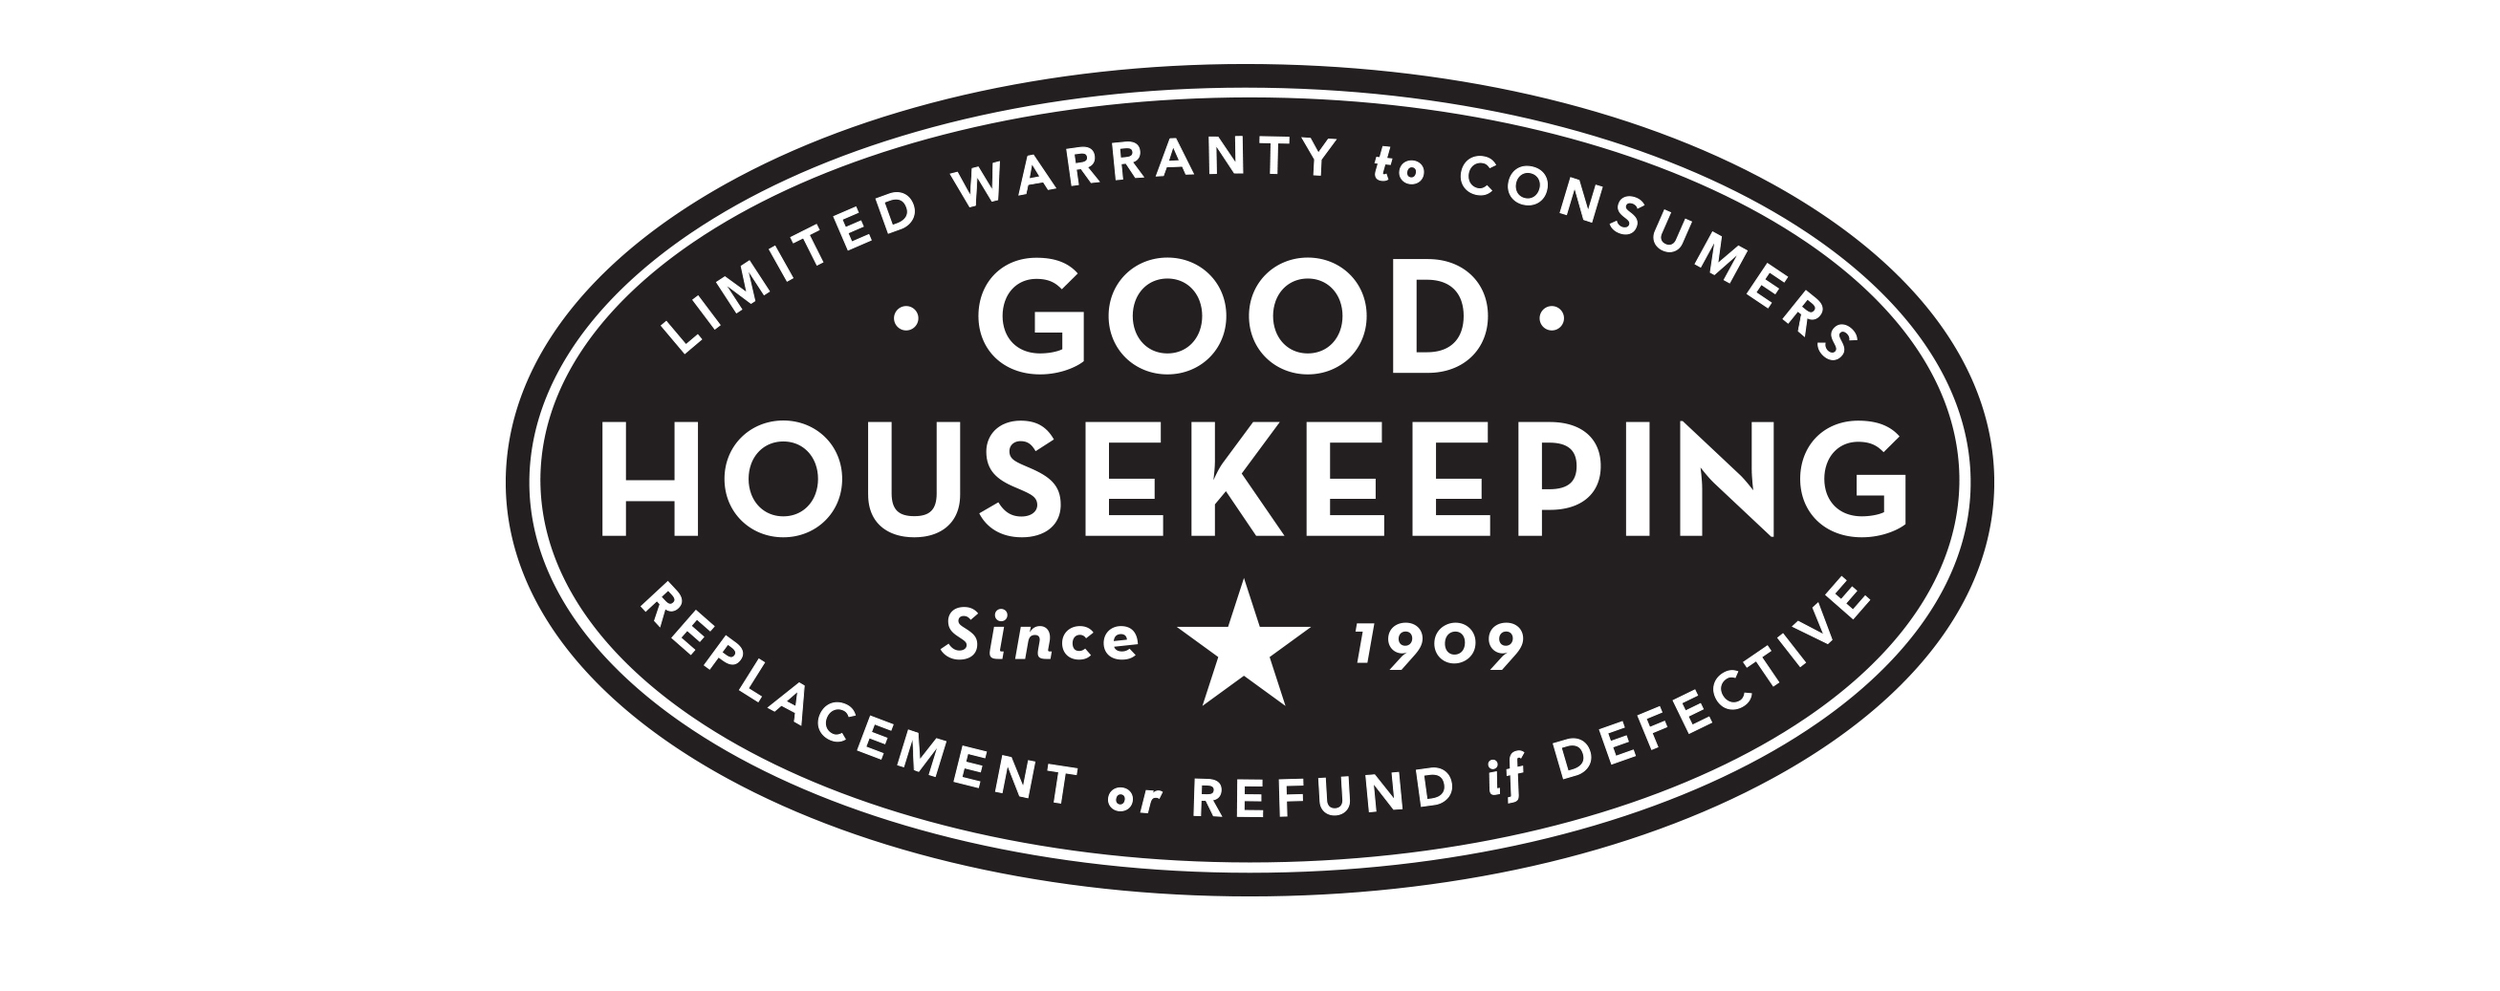 Good Housekeeping — Louise Fili Ltd